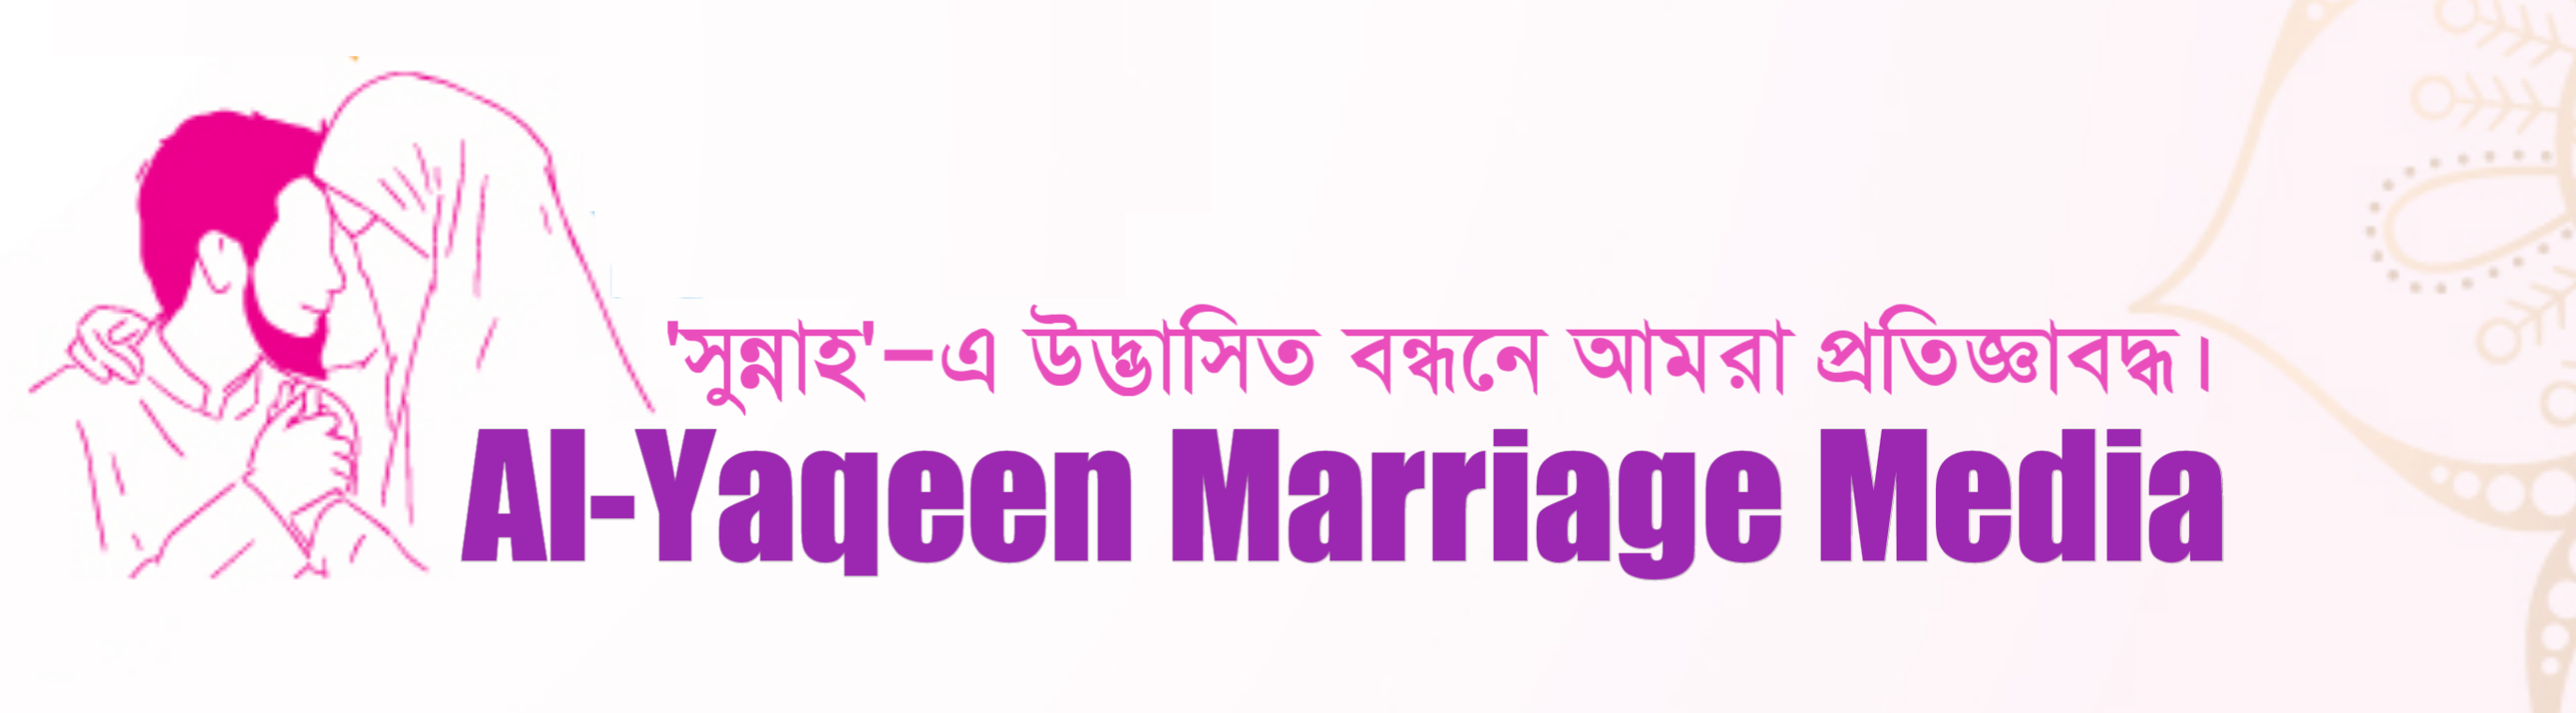 Al-Yaqeen Marriage Media | আল-ইয়াকিন ম্যারেজ মিডিয়া